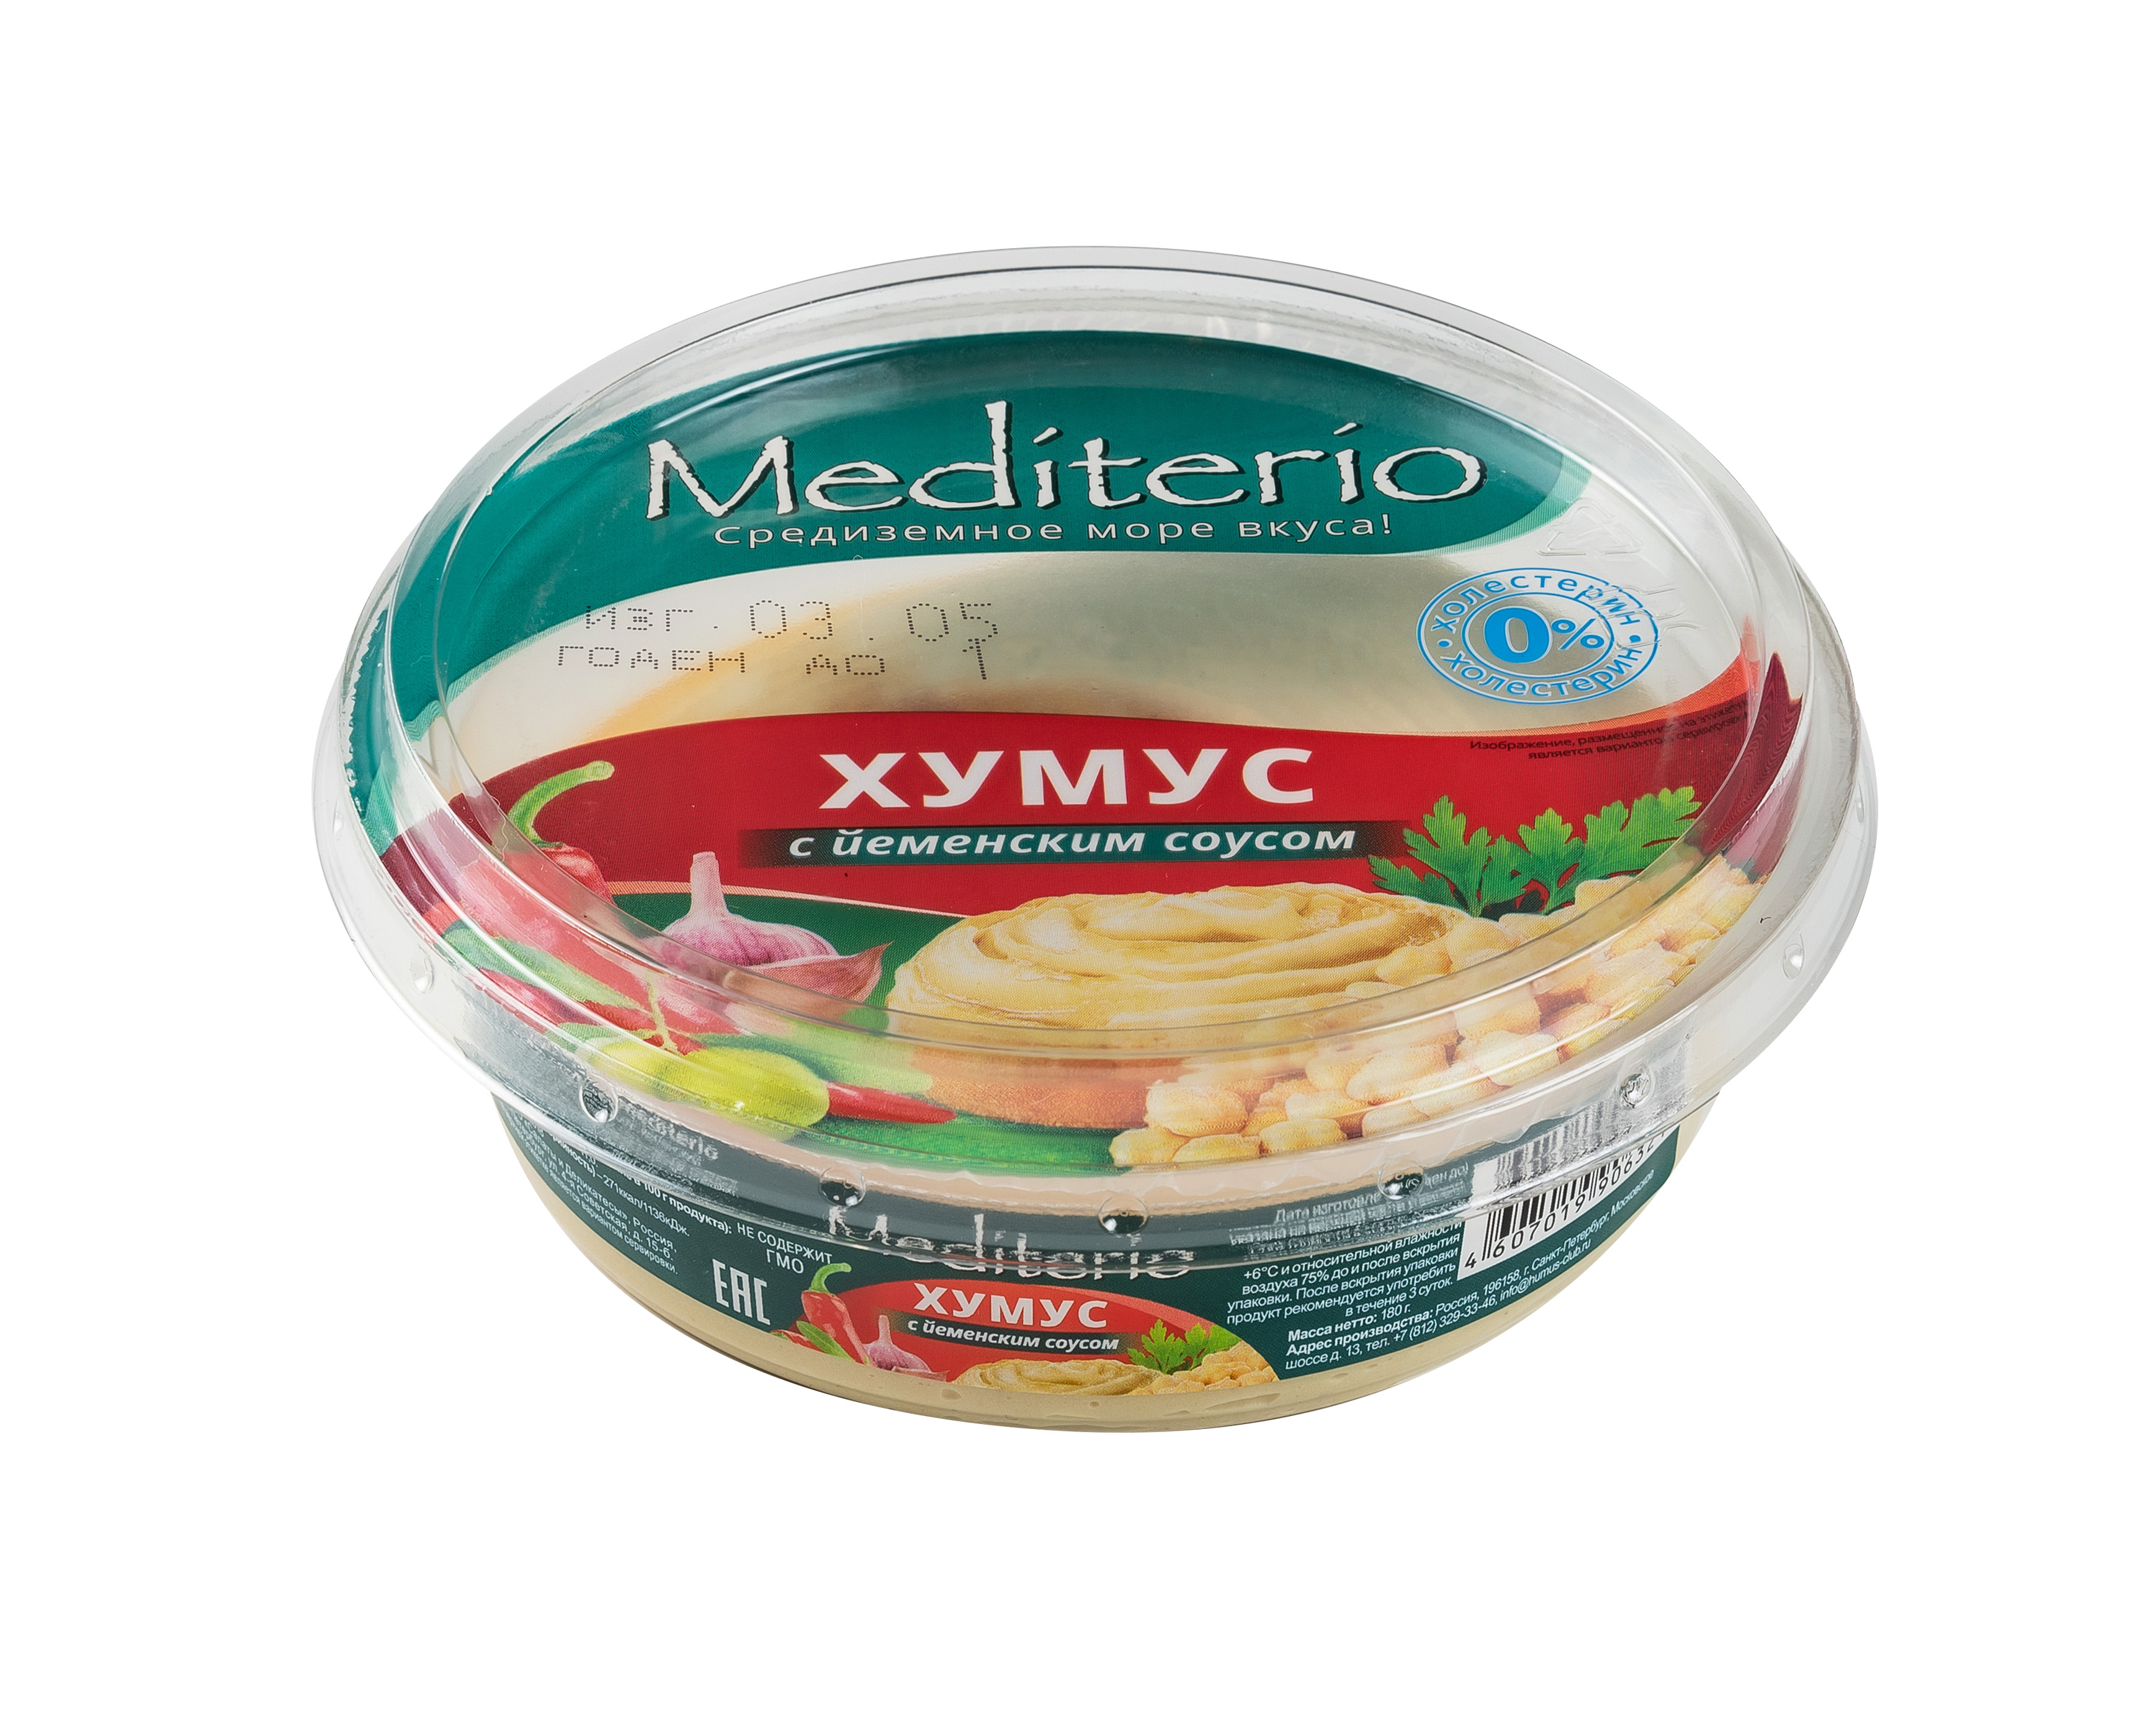 Хумус с йеменским соусом "Mediterio"